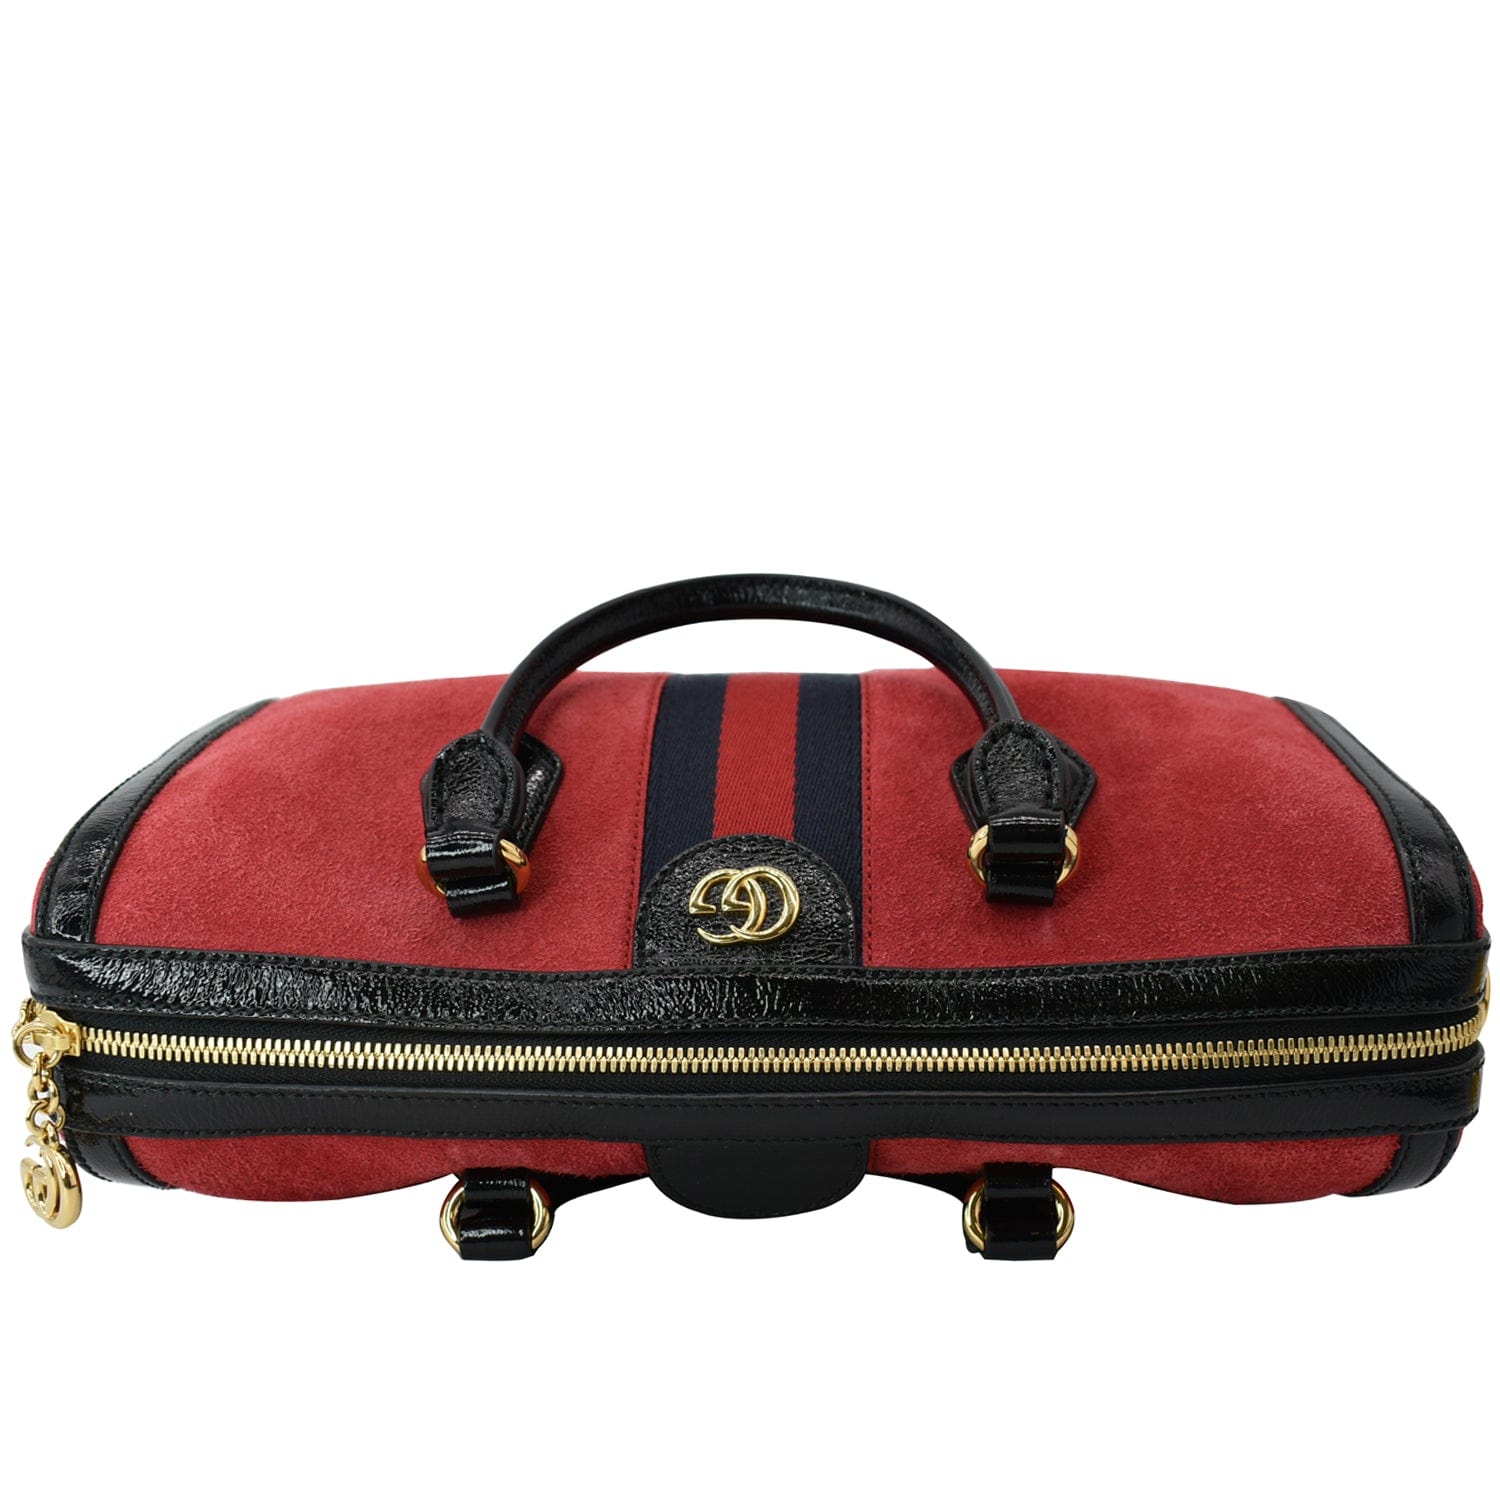  Gucci Guccissima Berry Red Boston Speedy Converible Bag